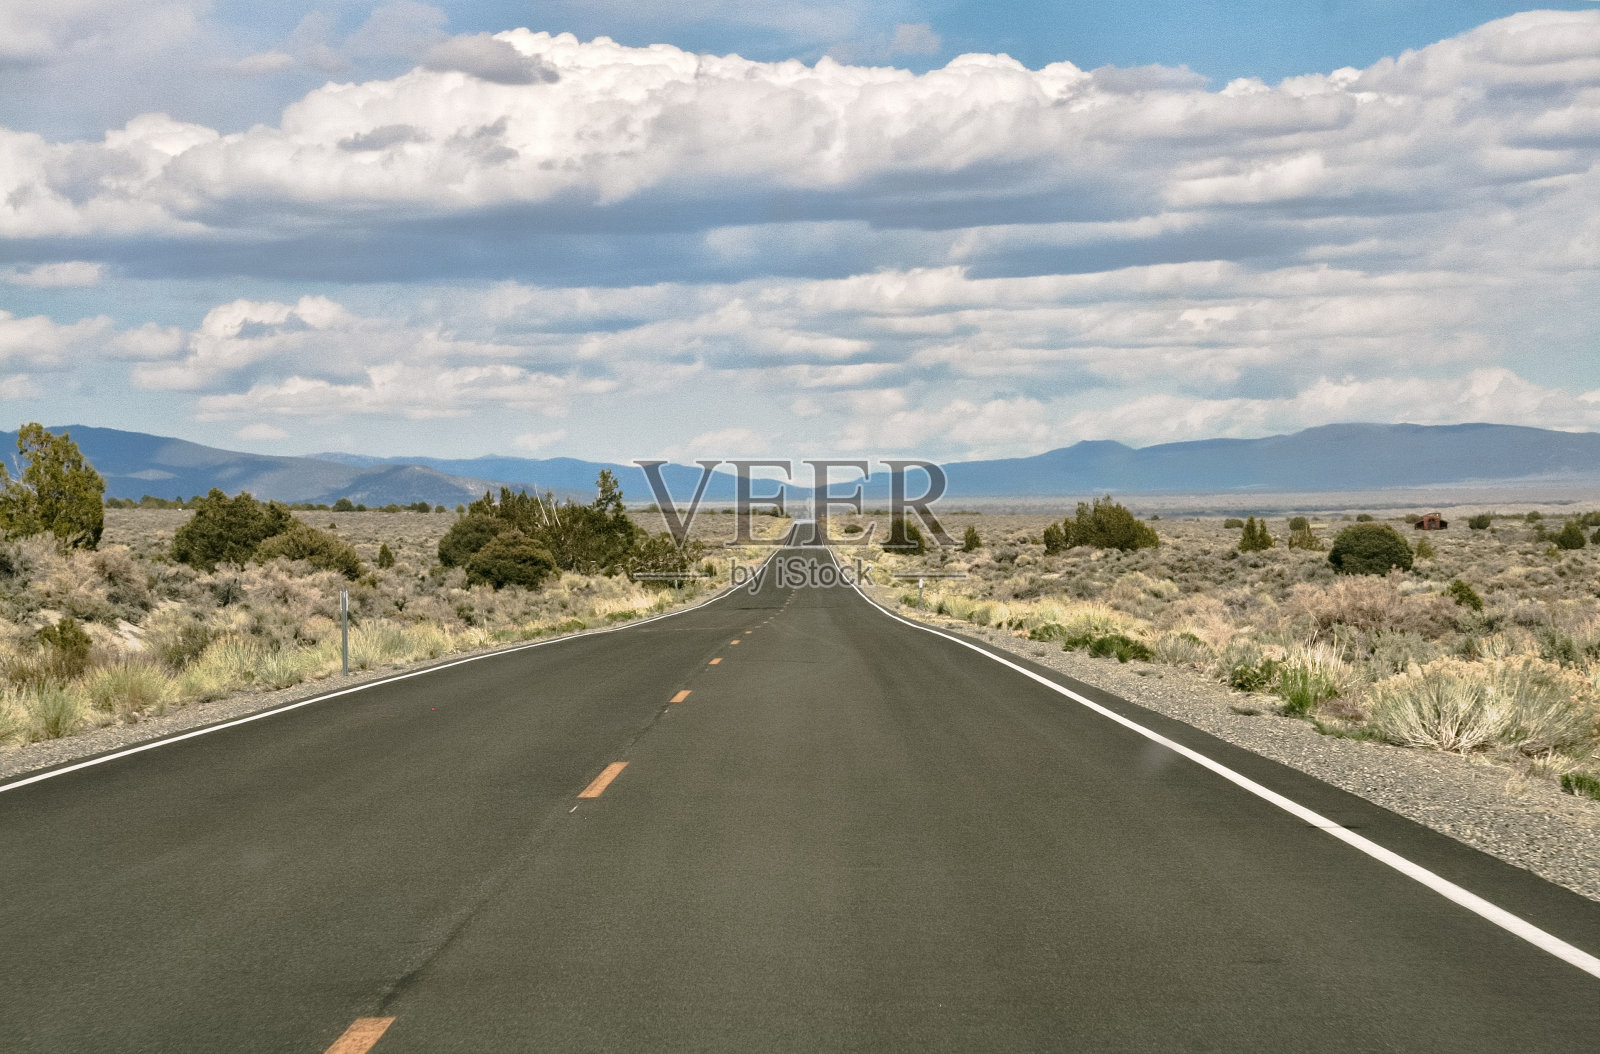 这是一条穿越美洲沙漠的又长又直的路照片摄影图片